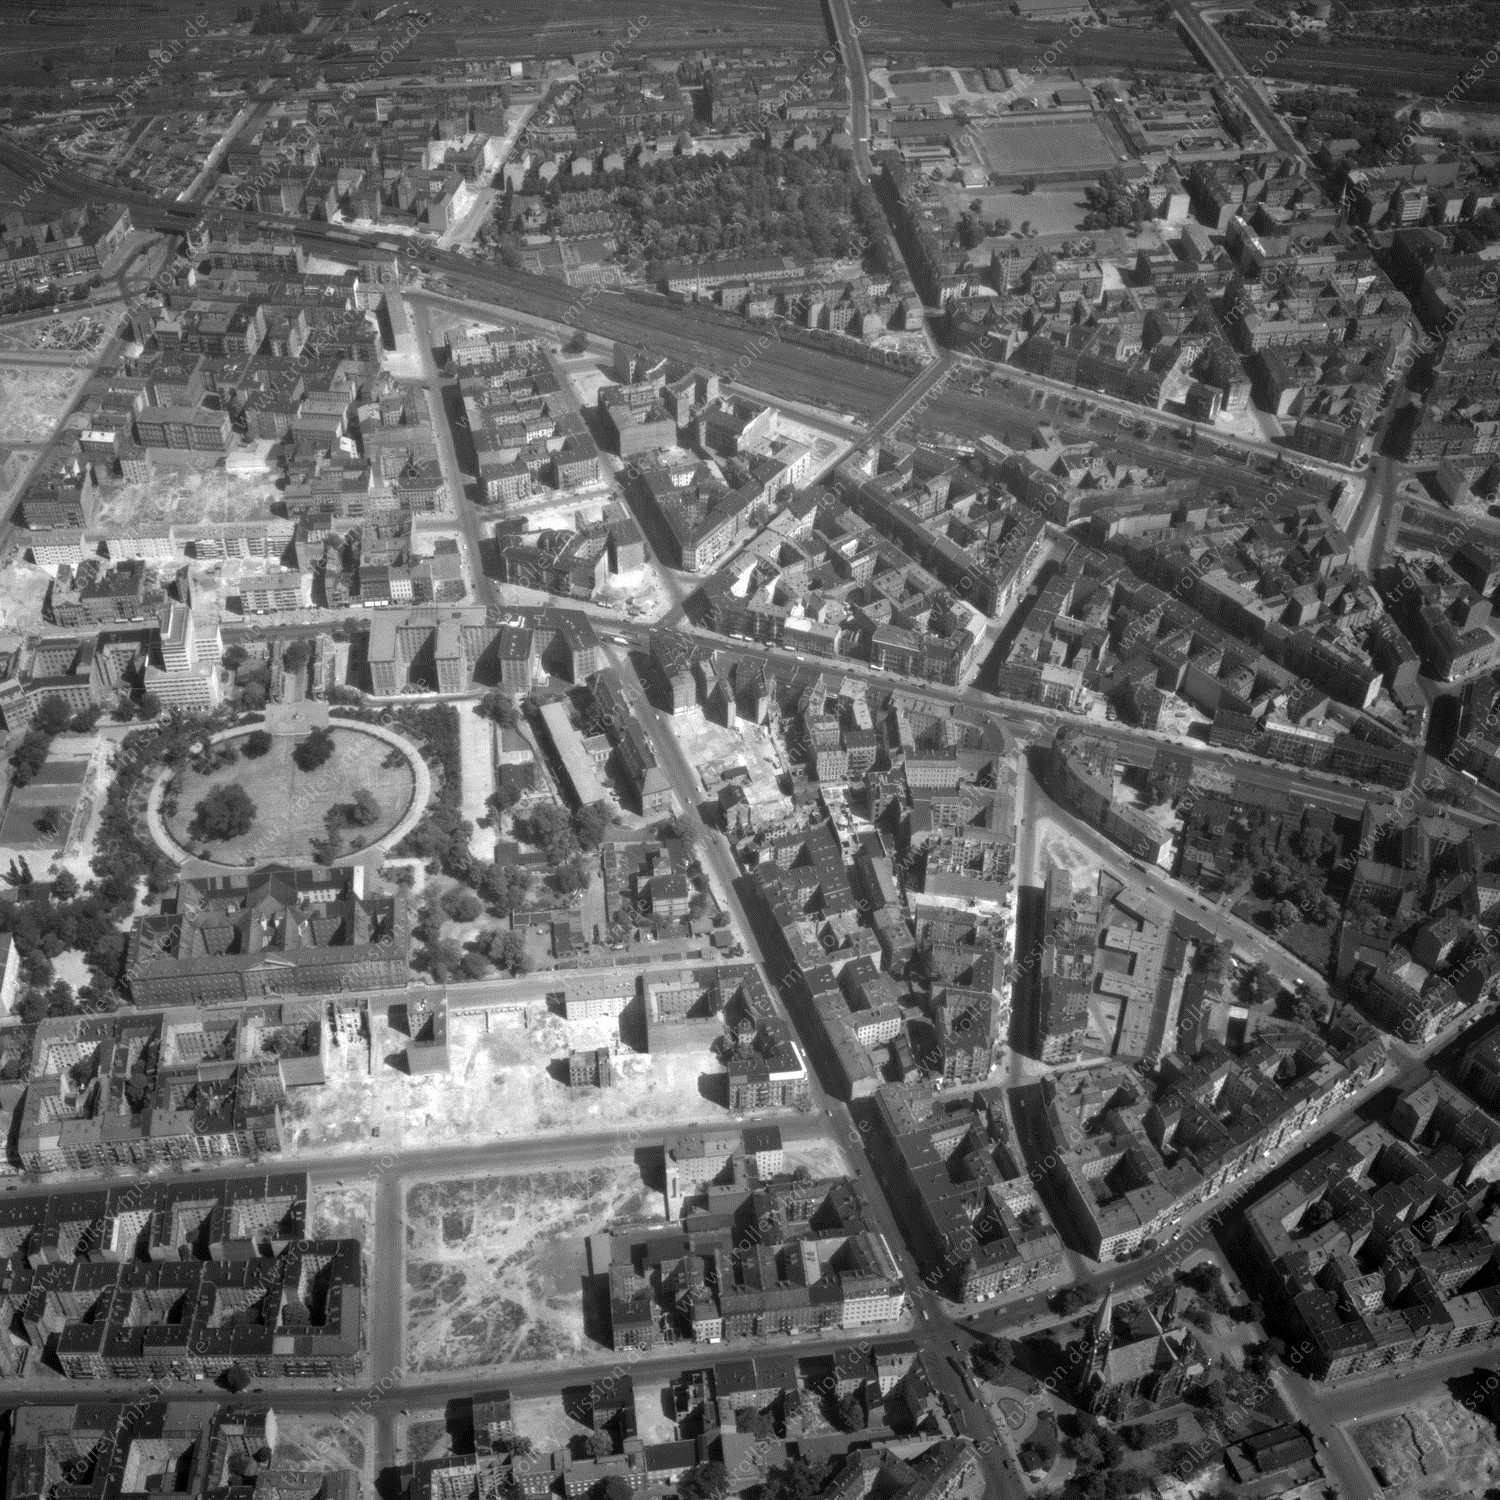 Alte Fotos und Luftbilder von Berlin - Luftbildaufnahme Nr. 03 - Historische Luftaufnahmen von West-Berlin aus dem Jahr 1954 - Flugstrecke Golf